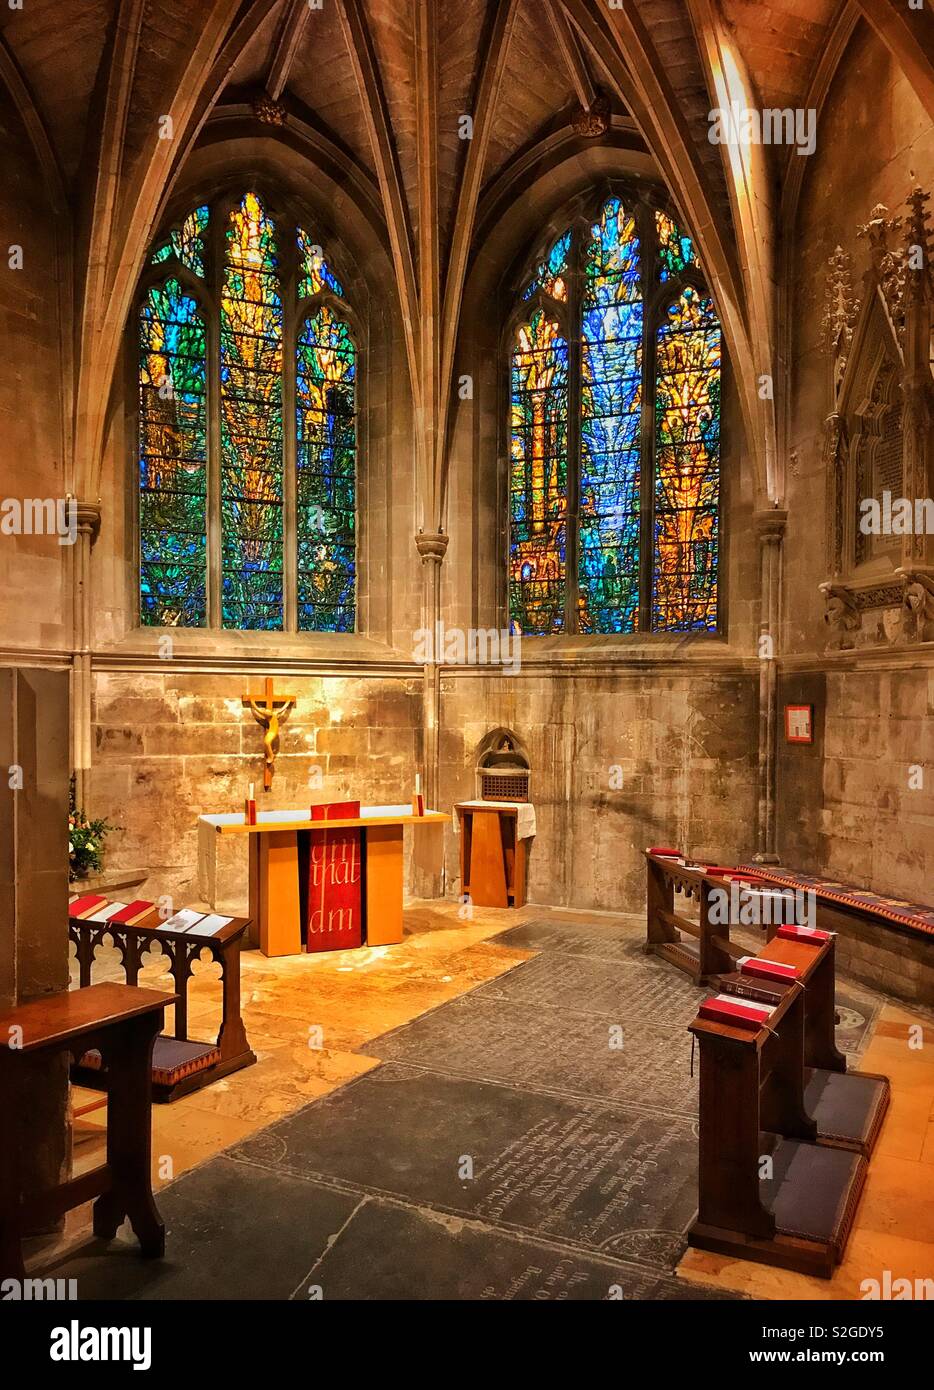 Die Kapelle von St. Katharina und St. John in Tewkesbury Abbey, Gloucestershire, England, UK. Die bunten Glasfenster Denny Windows wurden 2002 installiert. Foto © COLIN HOSKINS. Stockfoto